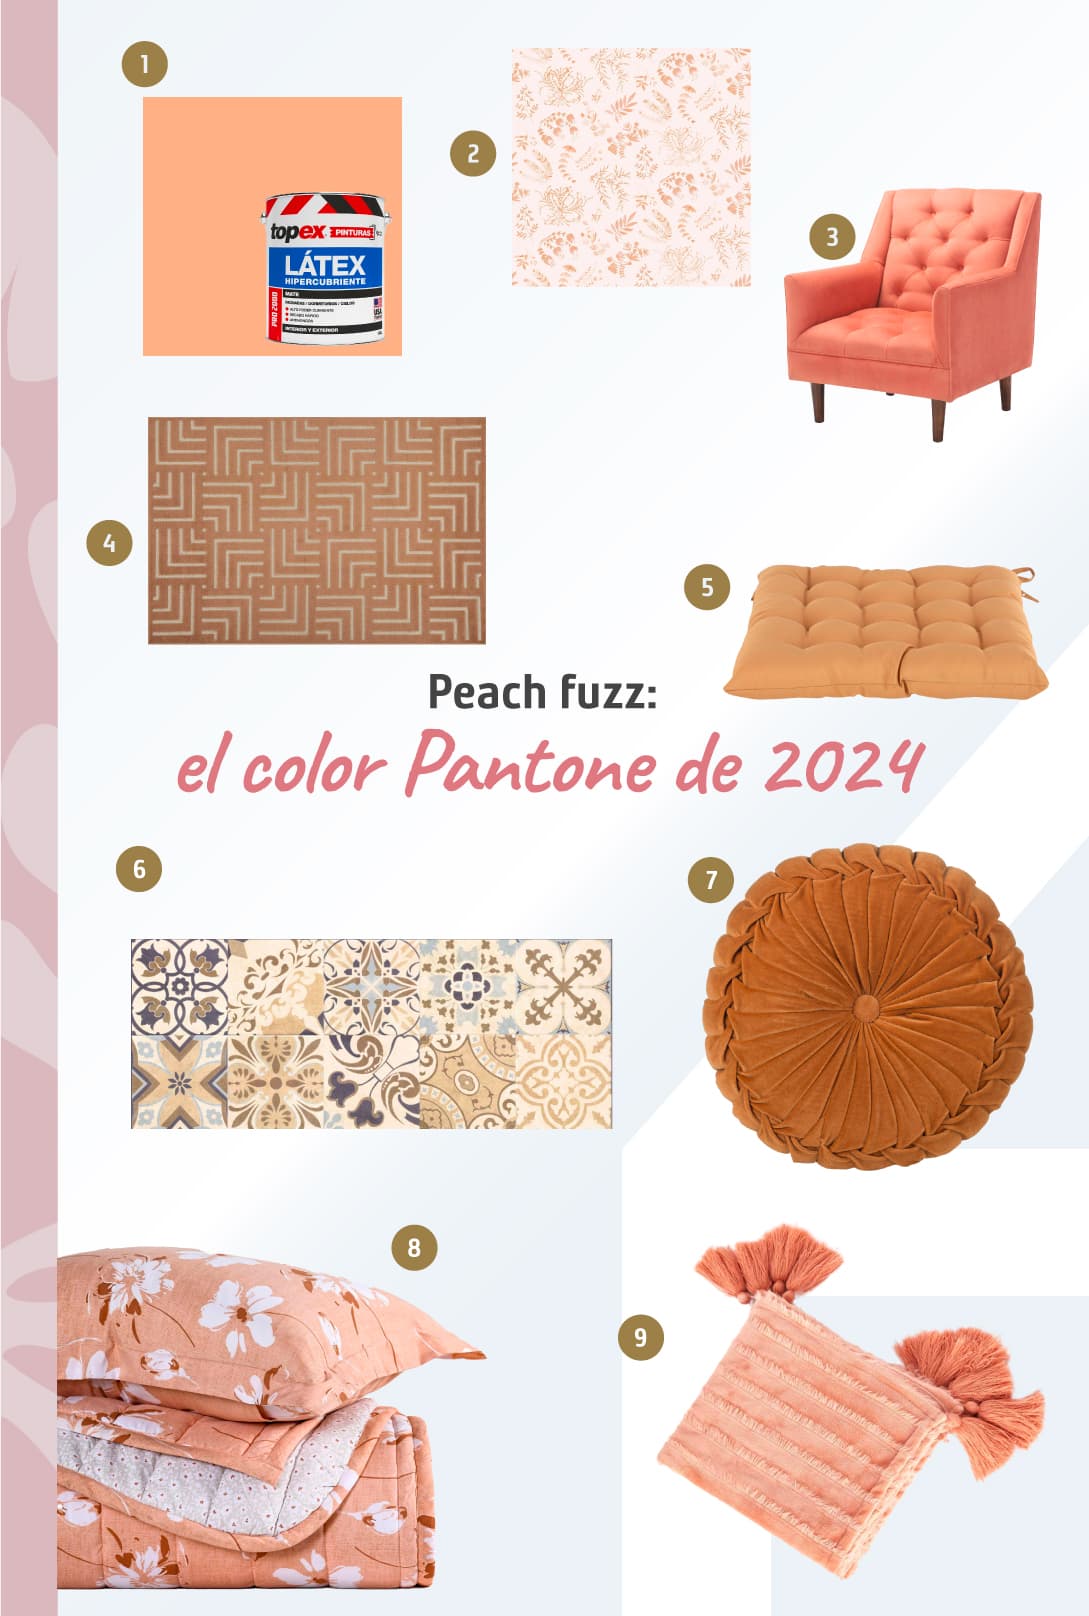 Moodboard de productos de colores Pantone de 2024, peach fuzz, disponibles en Sodimac.